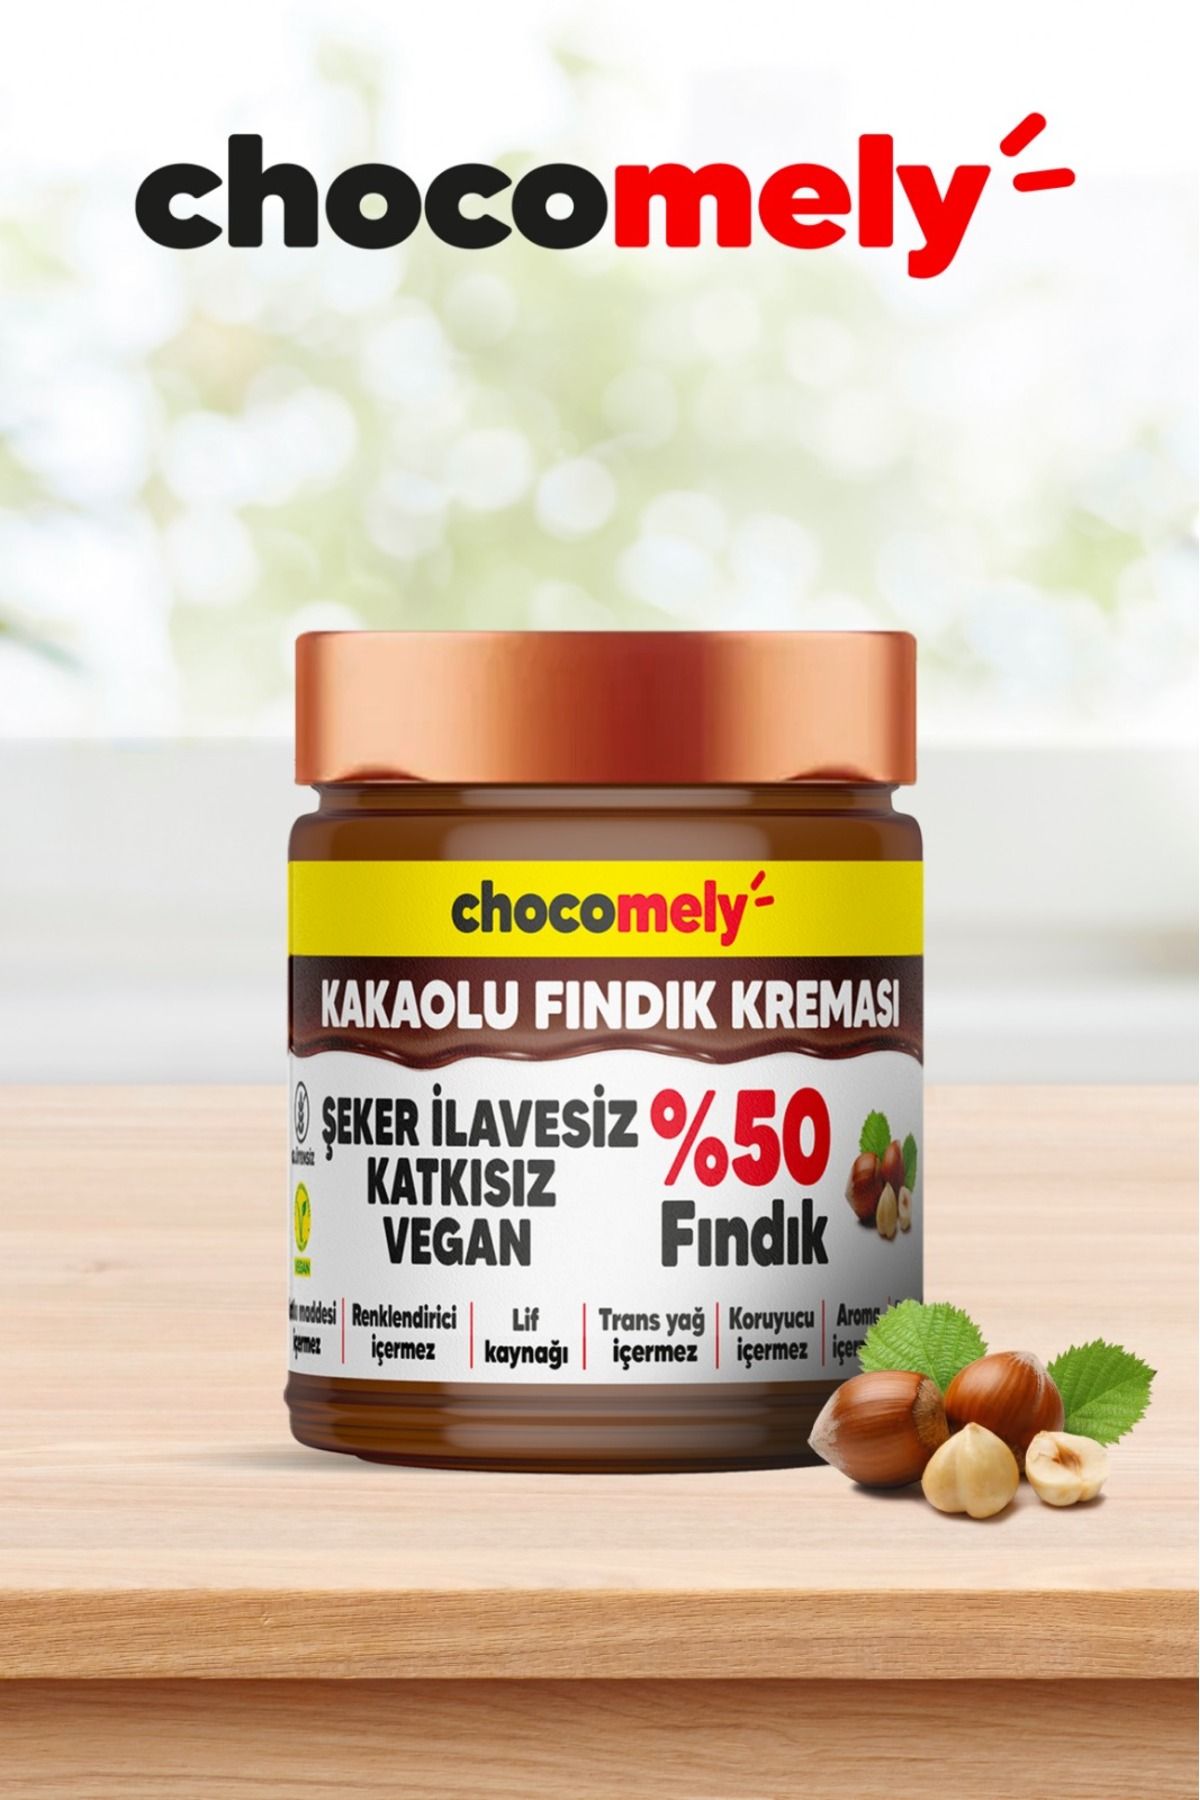 Chocomely %50 Fındıklı Kakaolu Fındık Kreması - Sadece 3 Ham Madde İle Üretilmiştir